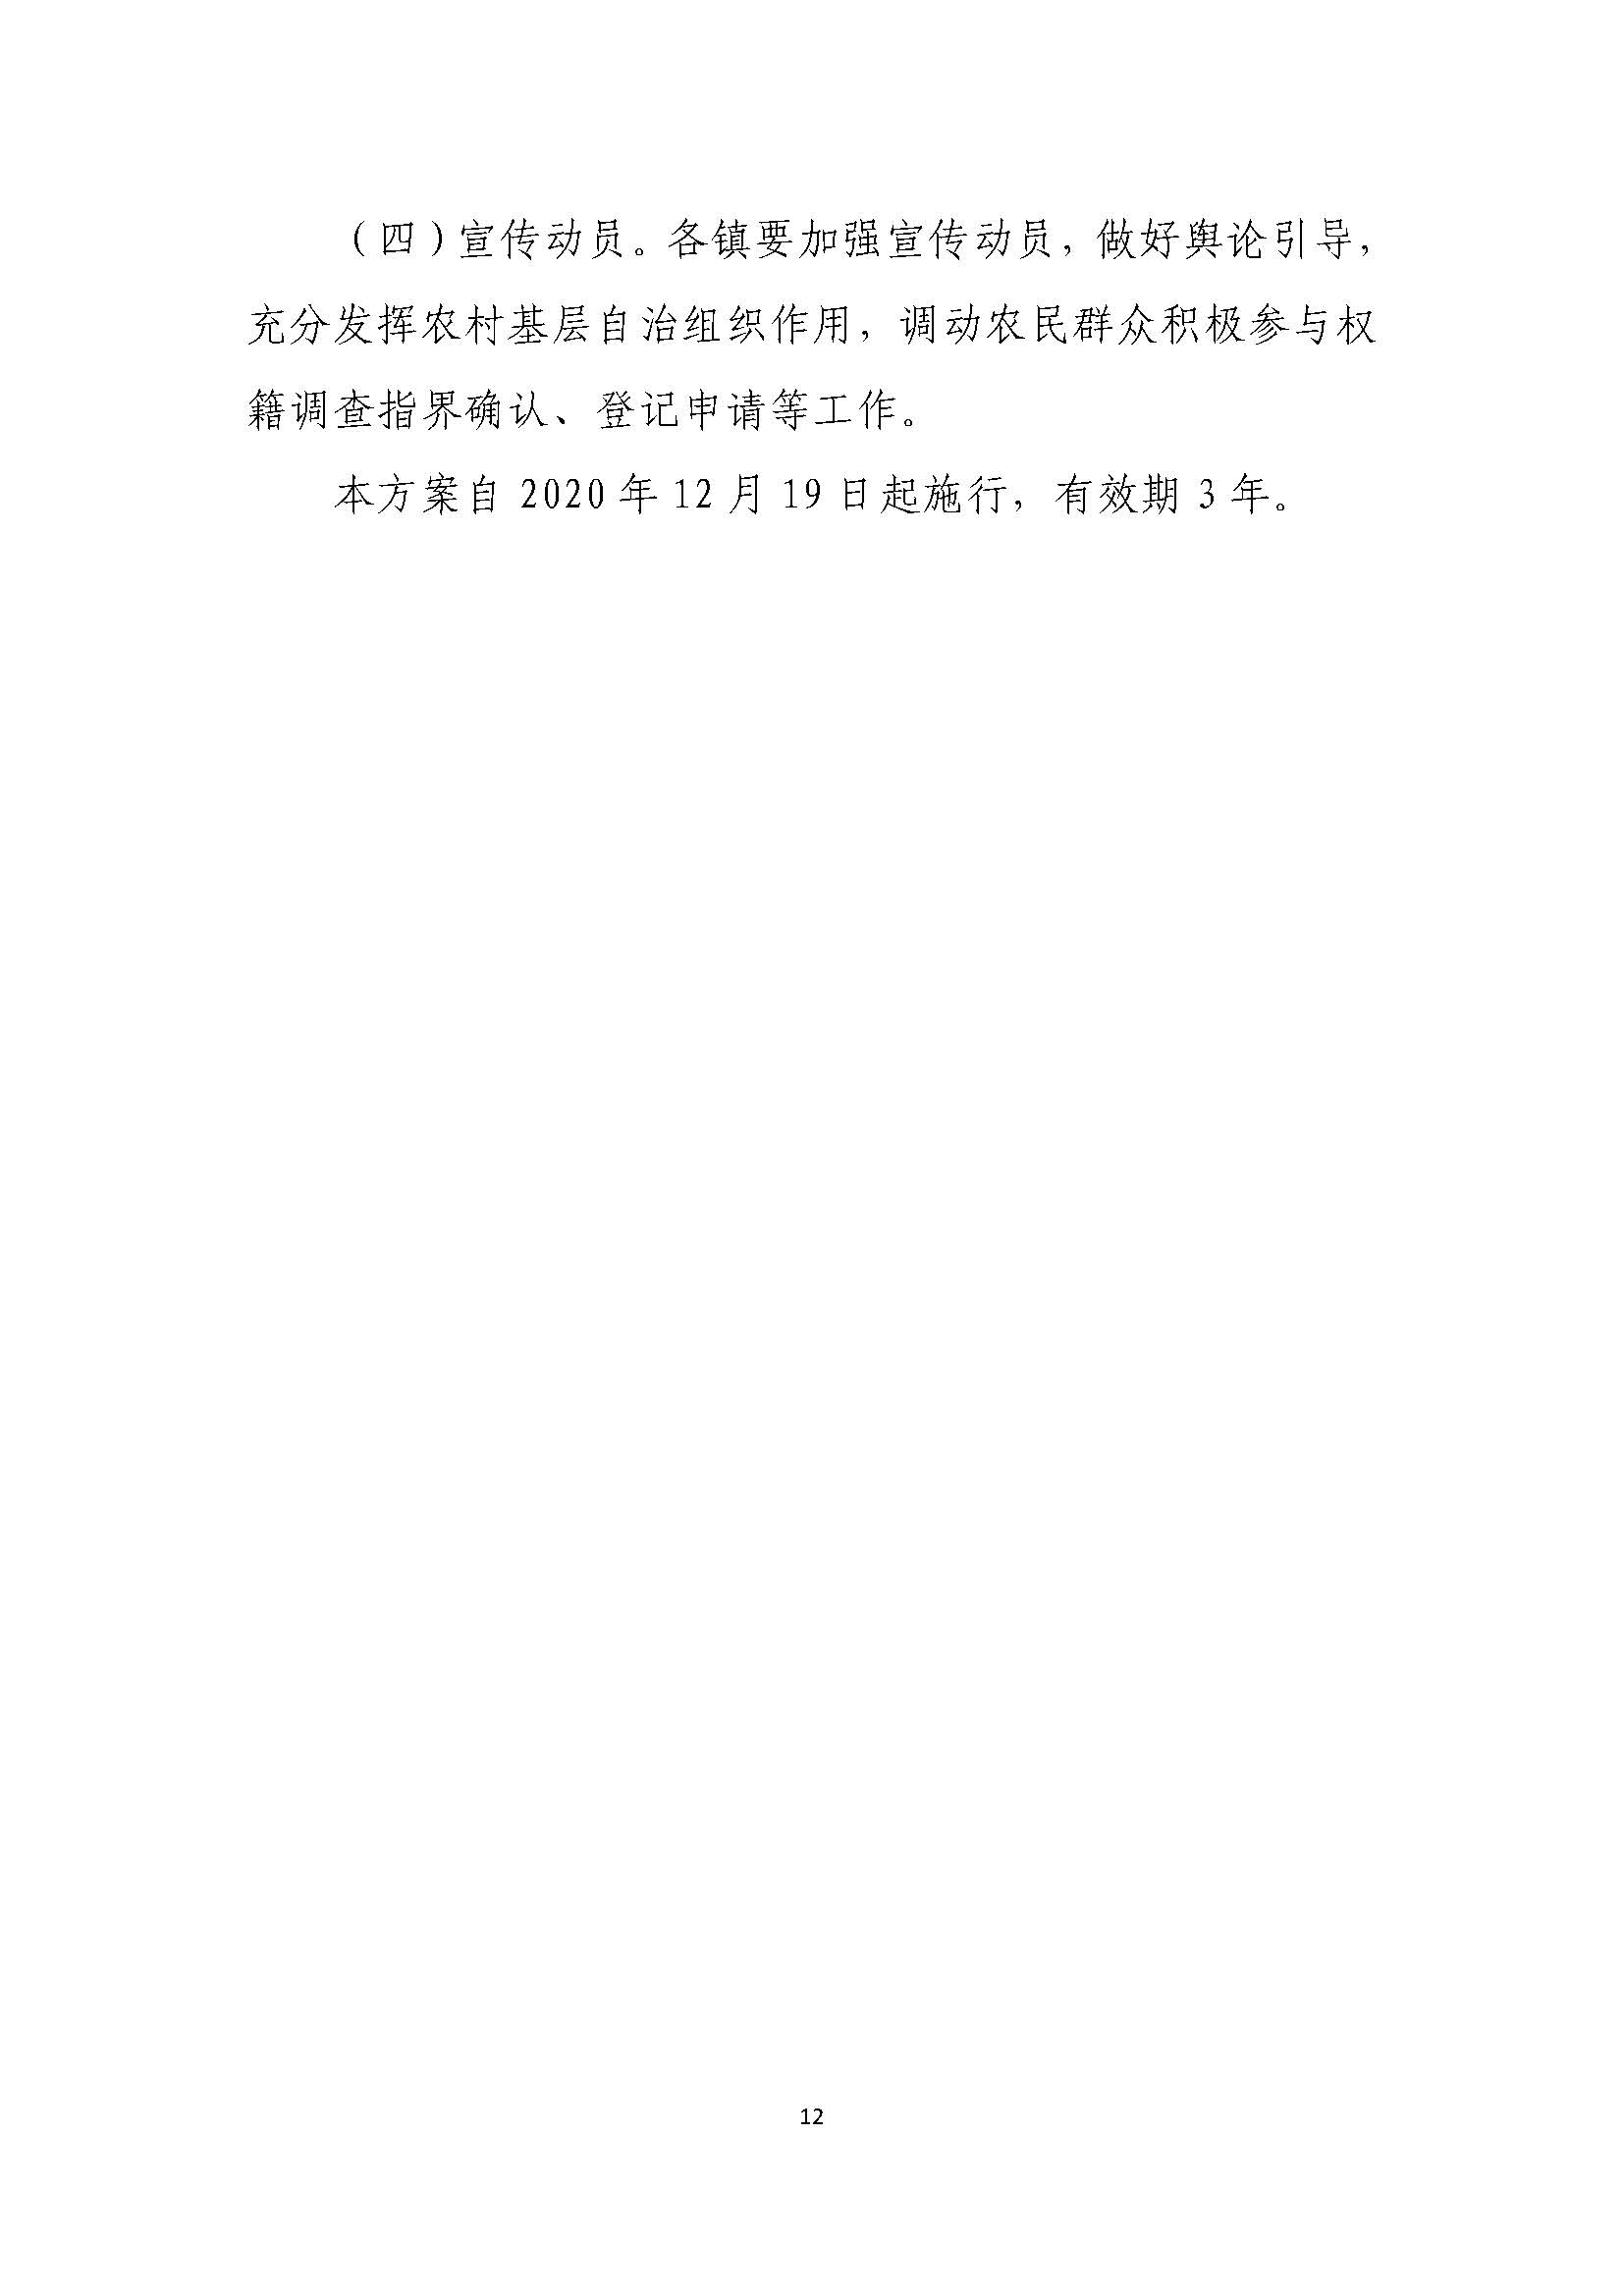 连平县“房地一体”农村不动产登记发证工作方案_页面_15.jpg